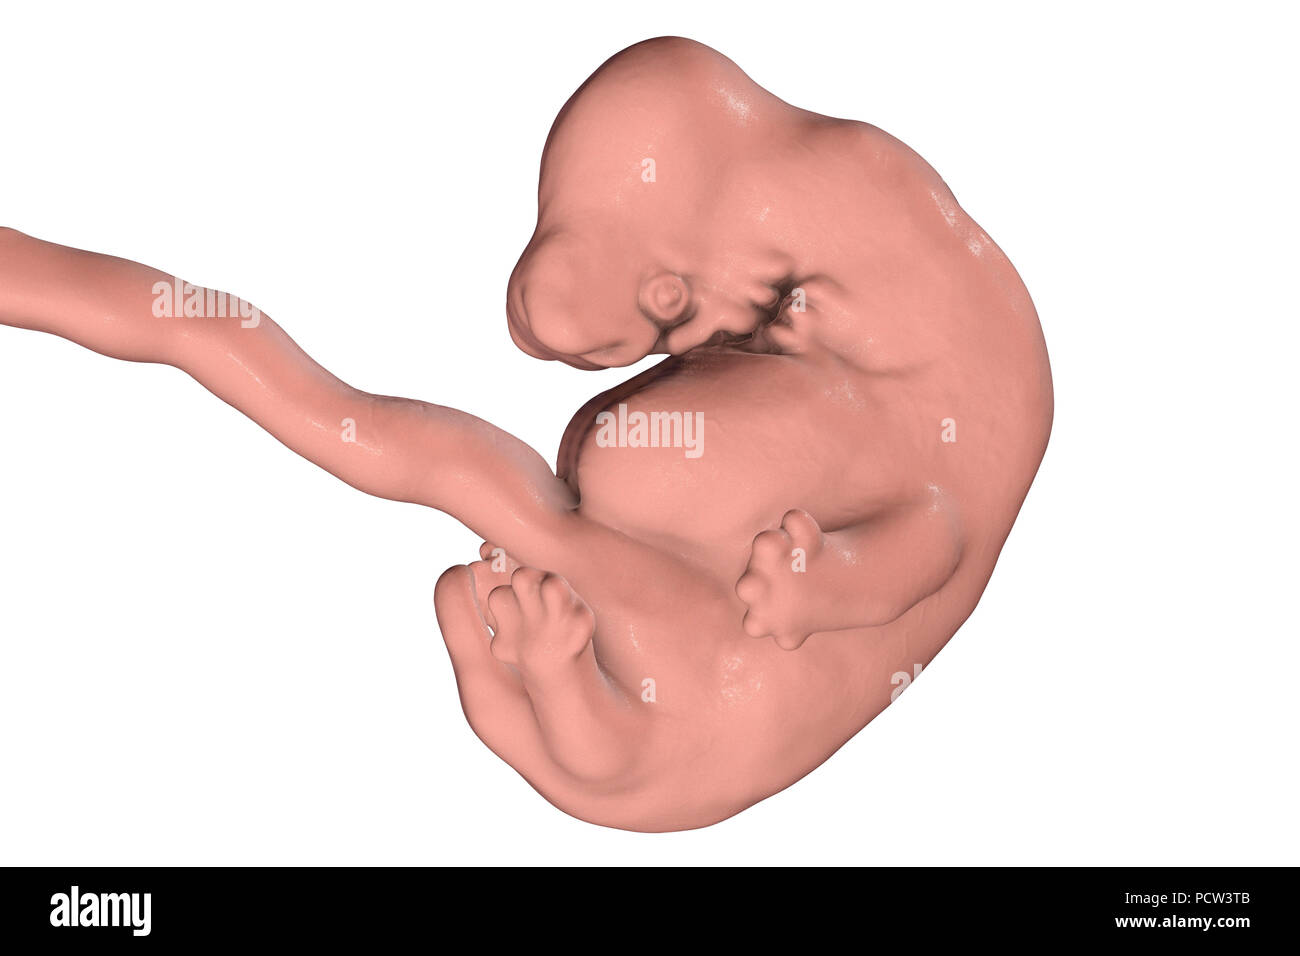 Human embryo at 6 weeks, computer illustration. Stock Photo